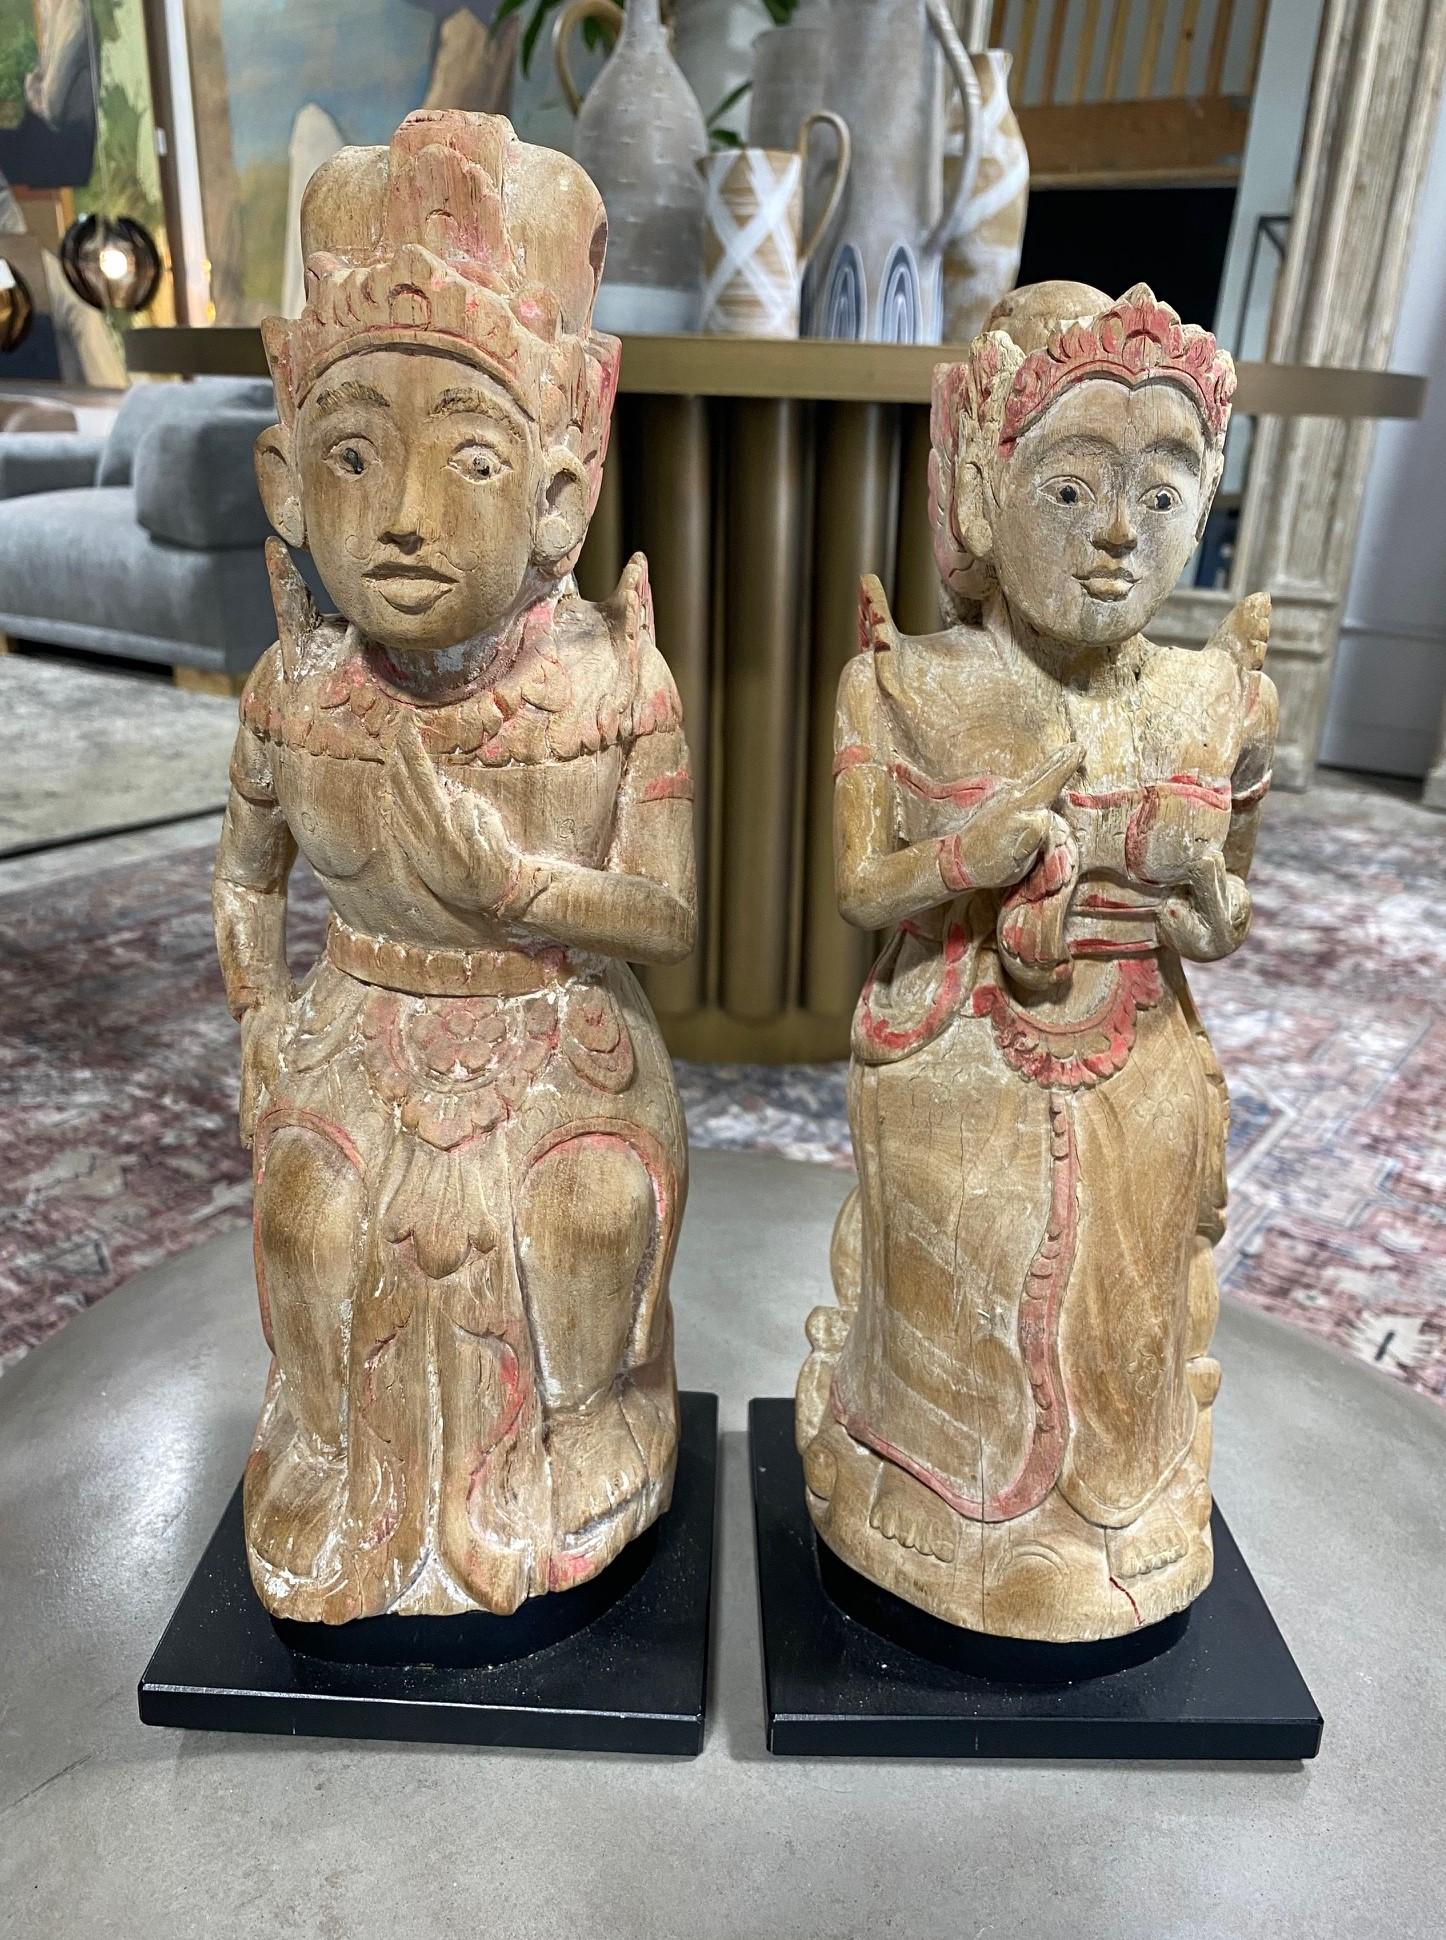 Merveilleuse et unique paire de statues de dévotion balinaises indonésiennes en bois sculpté à la main et polychrome, provenant de l'île de Bali. 

Cette paire, qui date probablement du début ou du milieu du 20e siècle, présente une belle patine